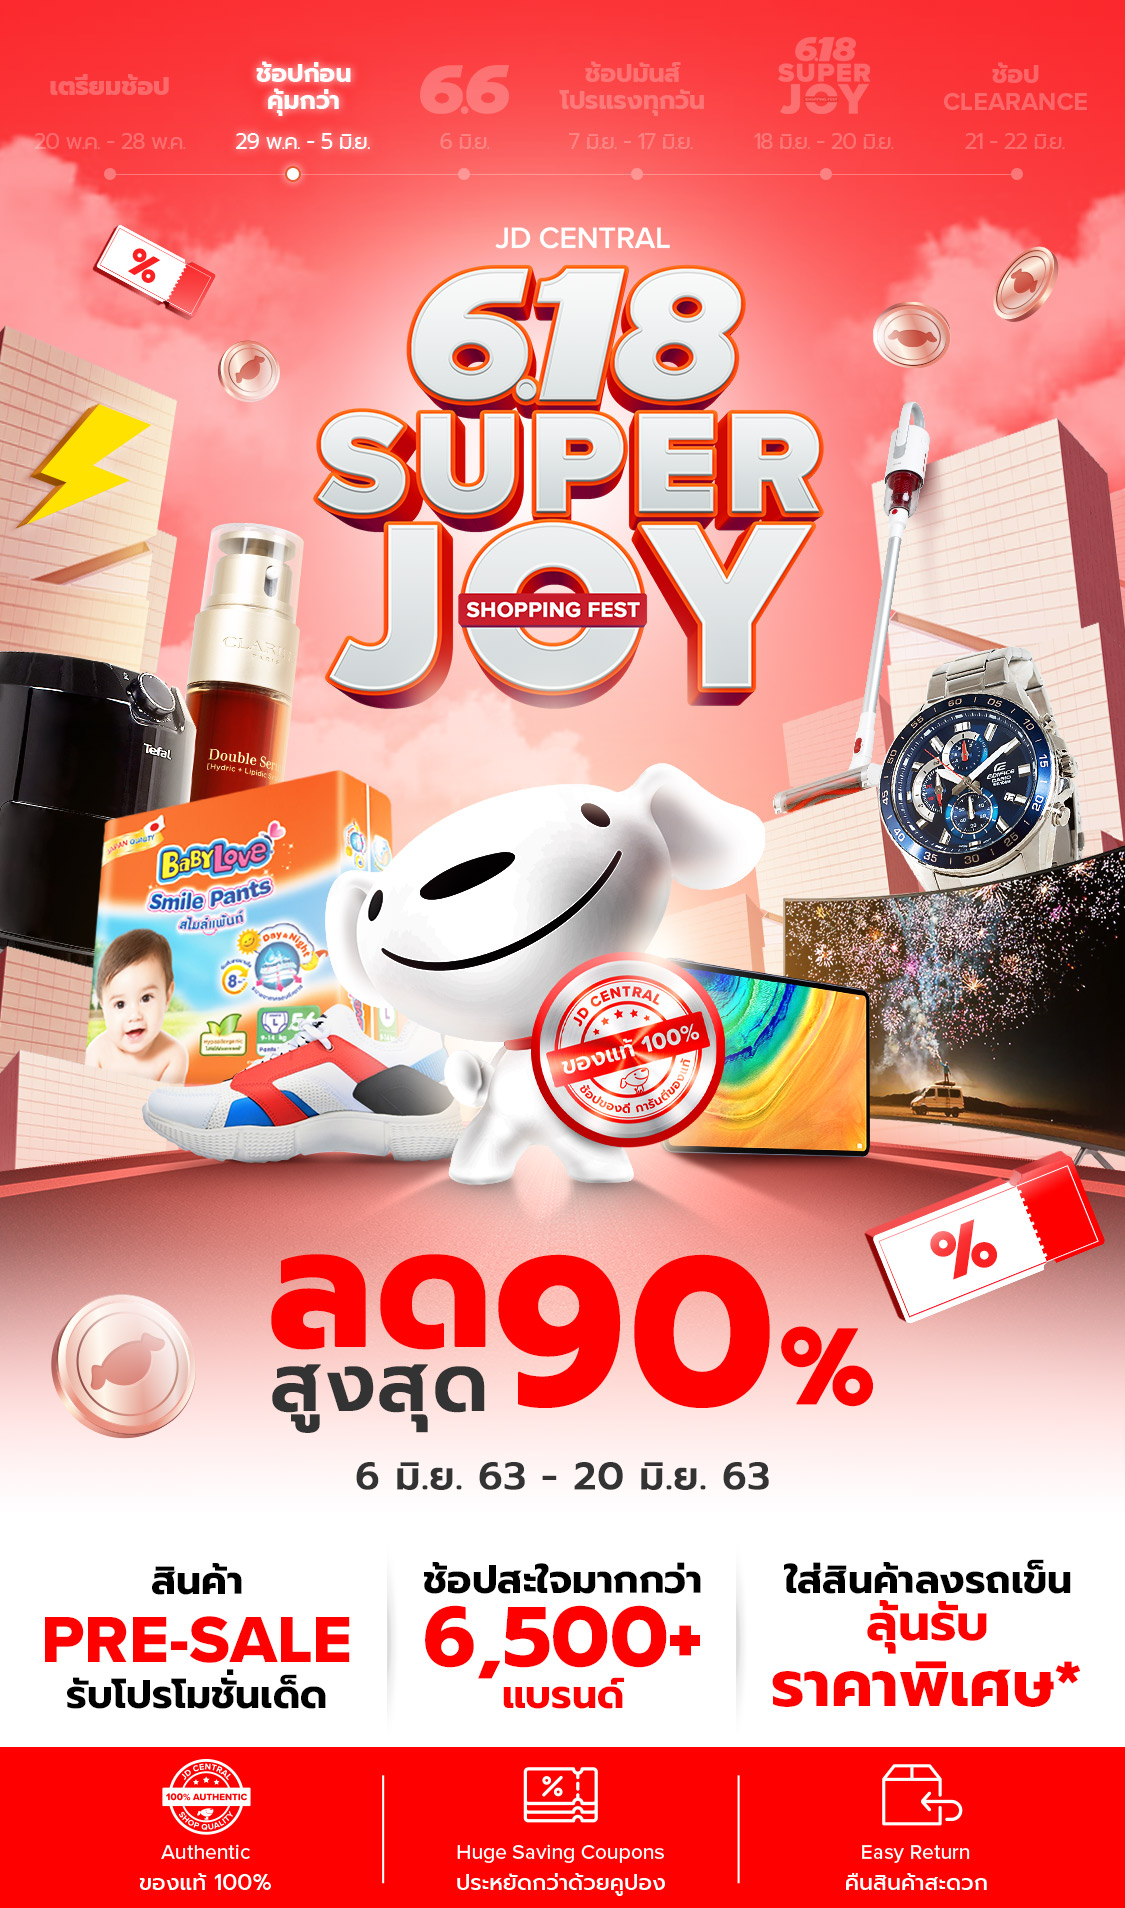 Named JD Central 618 Super Joy Shopping Fest